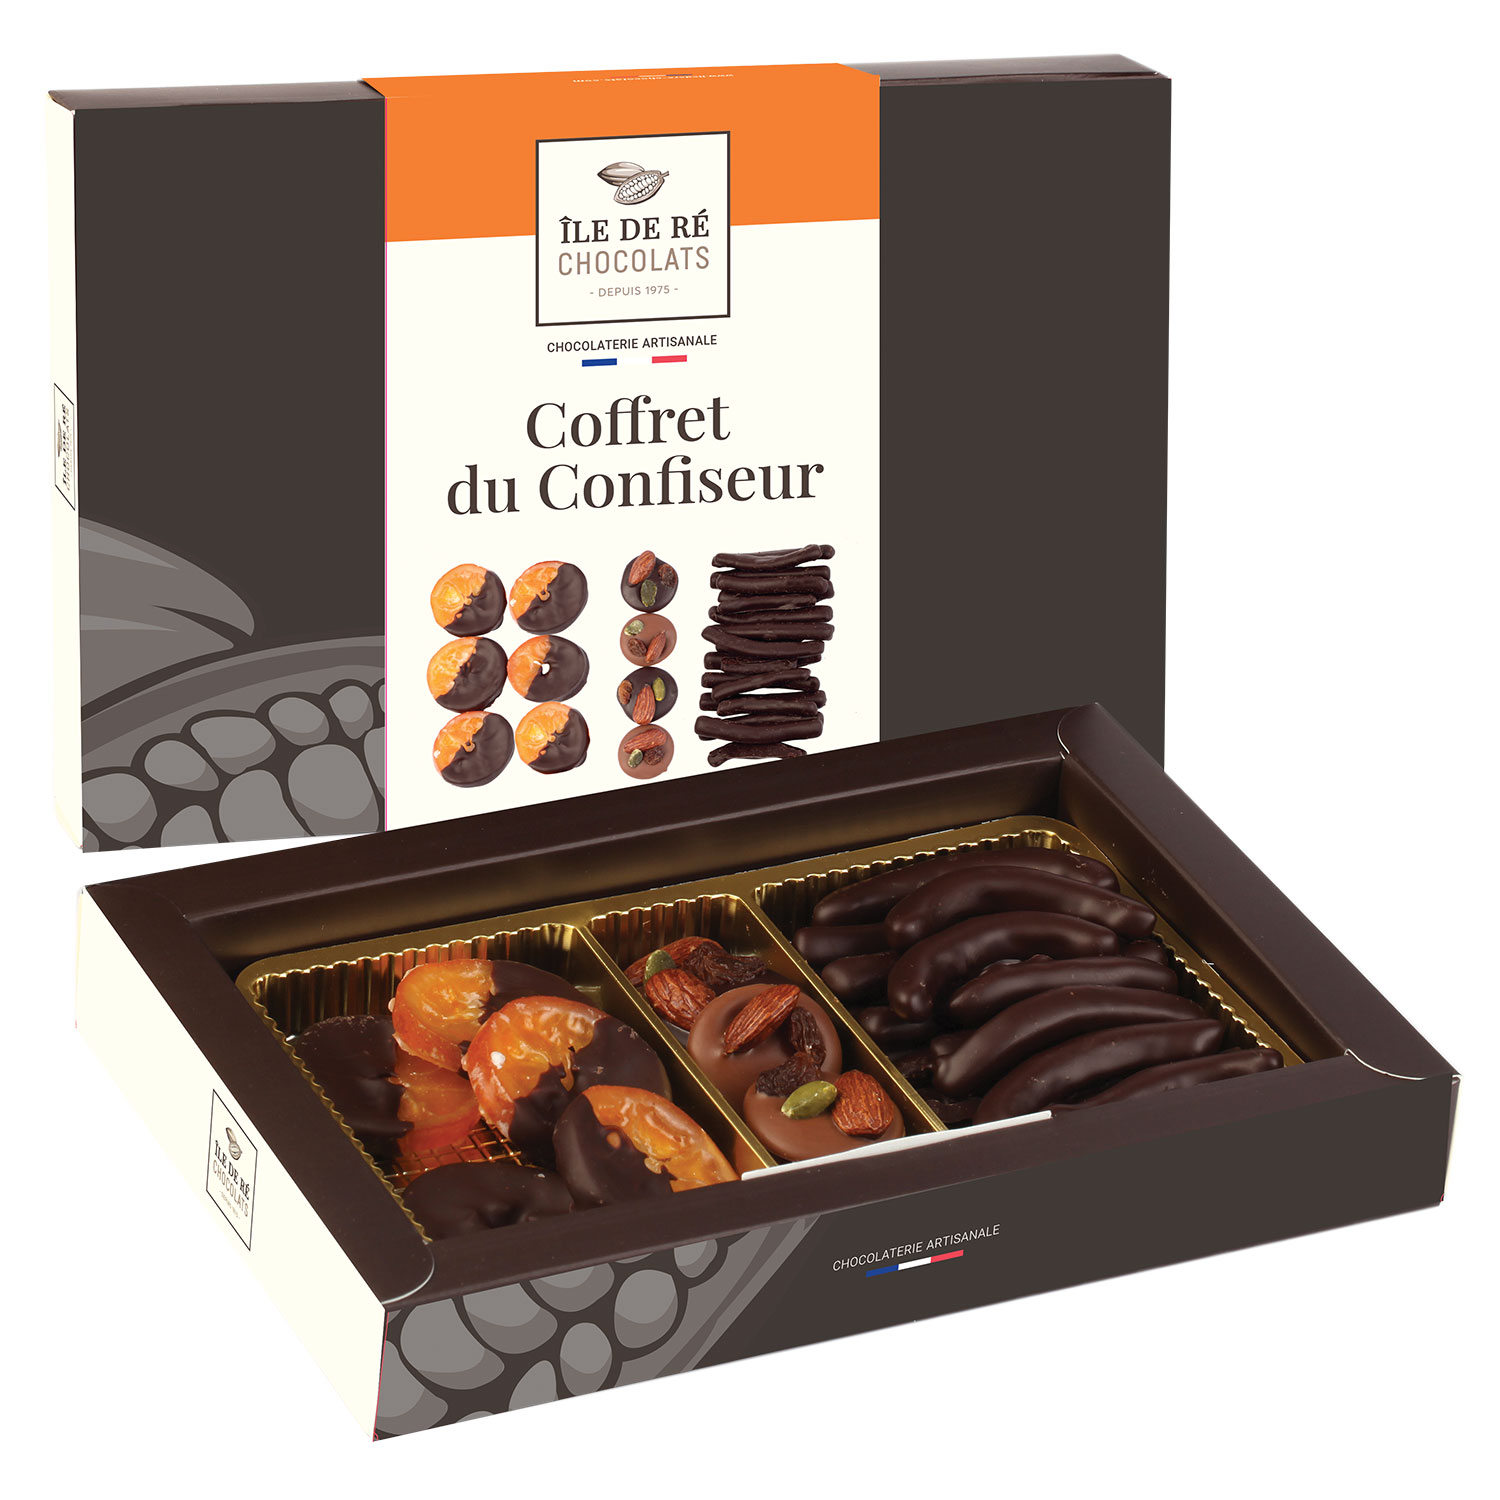 https://iledere-chocolats.com/wp-content/uploads/2022/04/Coffret-du-confiseur-Ile-de-Re-Chocolats.jpg